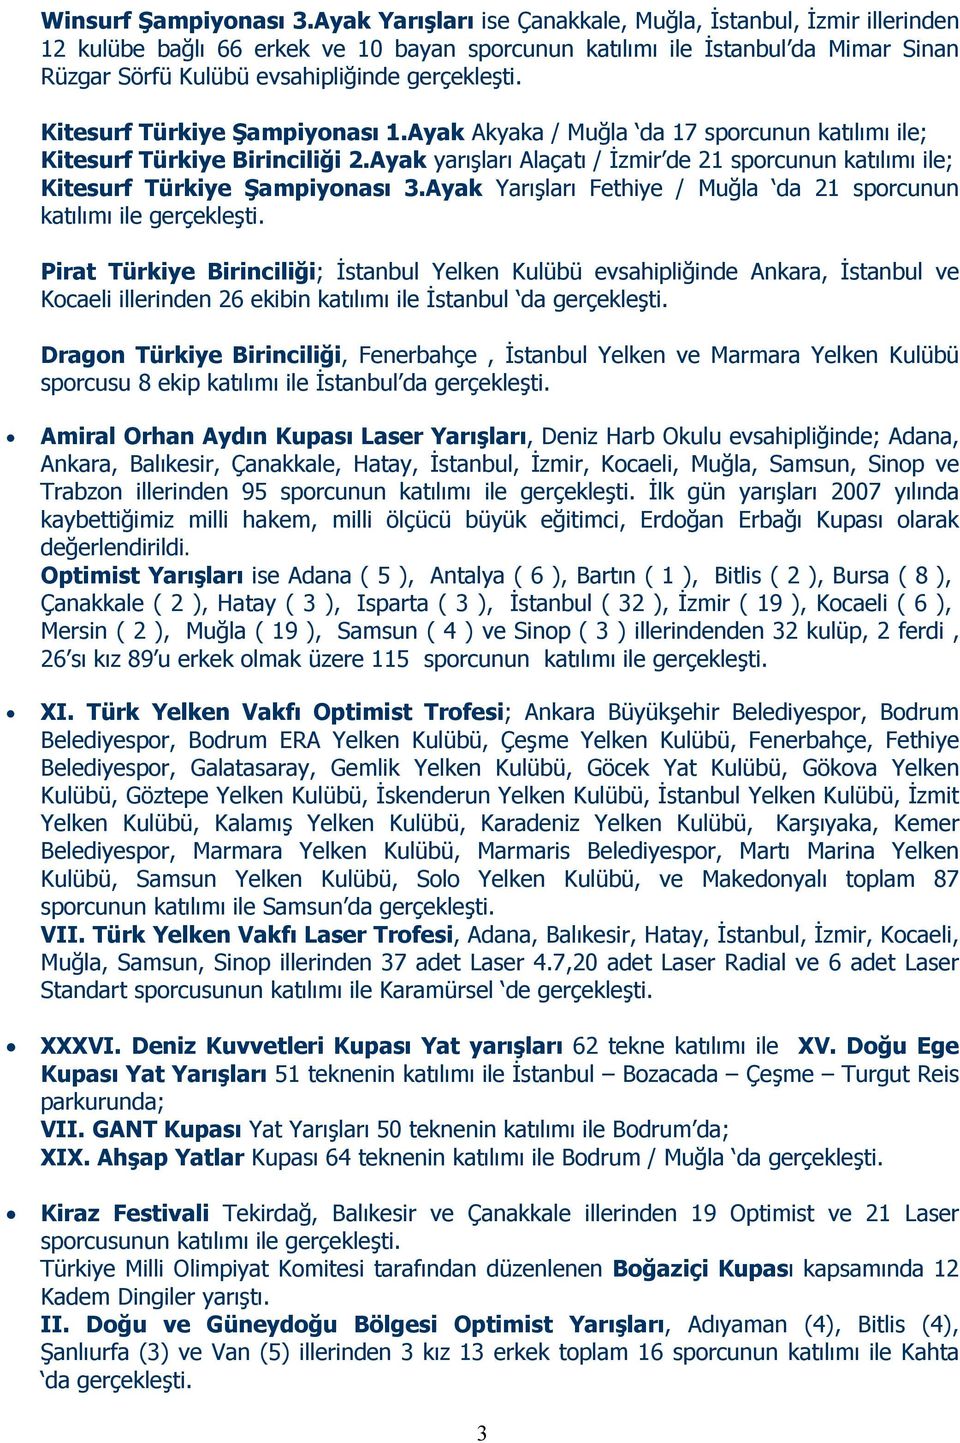 Kitesurf Türkiye Şampiyonası 1.Ayak Akyaka / Muğla da 17 sporcunun katılımı ile; Kitesurf Türkiye Birinciliği 2.